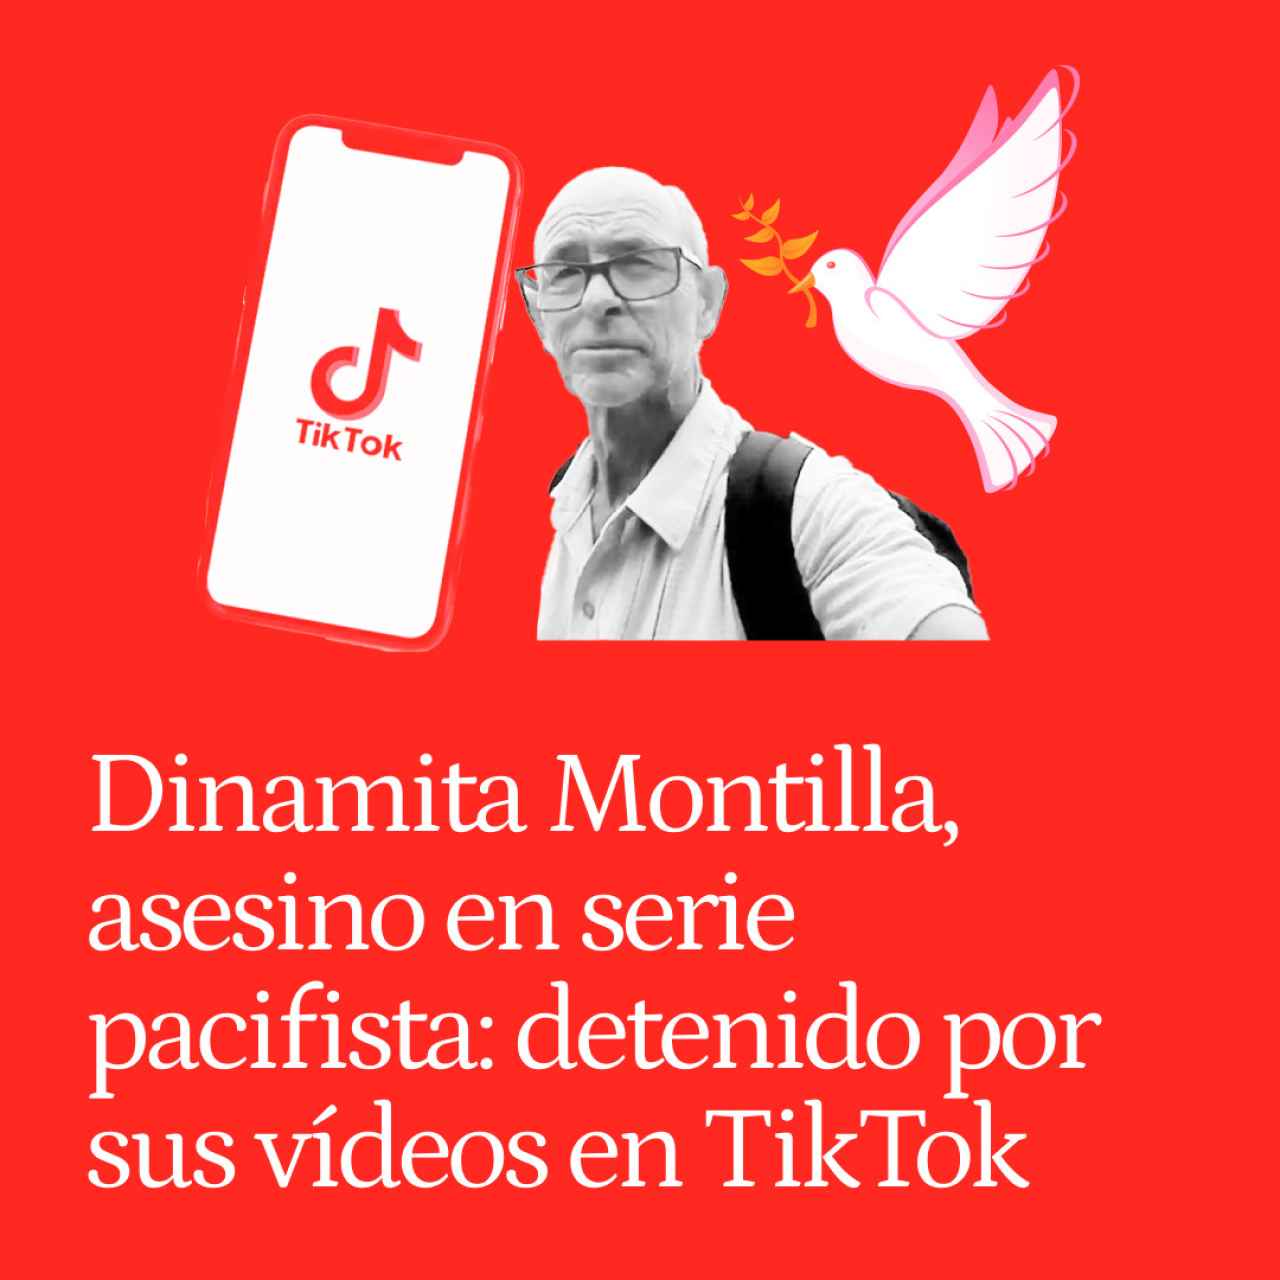 Dinamita Montilla, asesino en serie pacifista: detenido por sus vídeos en TikTok tras una quinta muerte